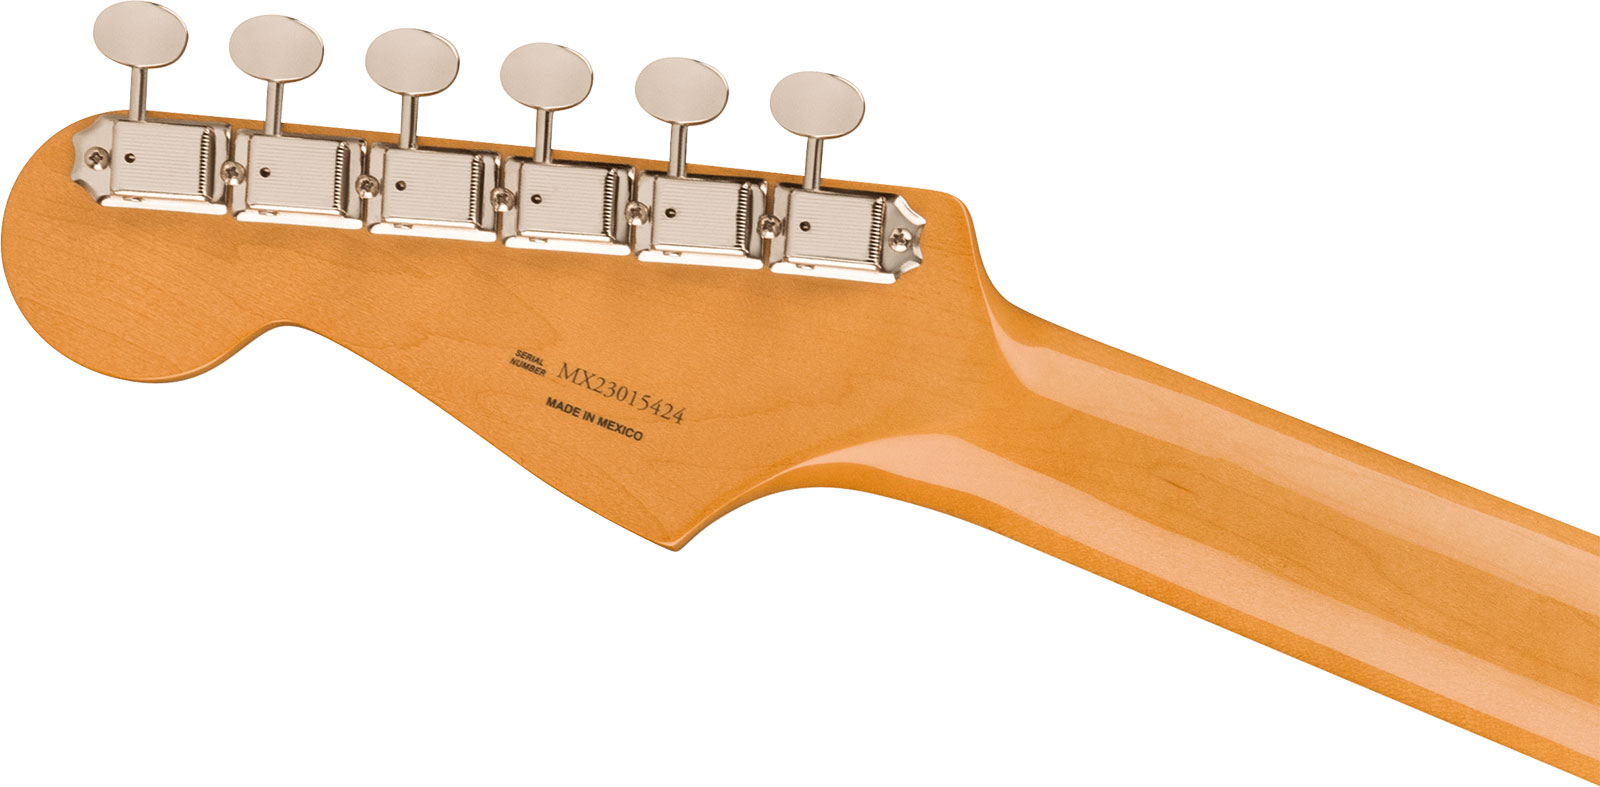 Fender Strat 60s Vintera 2 Mex 3s Trem Rw - Olympic White - Guitare Électrique Forme Str - Variation 3